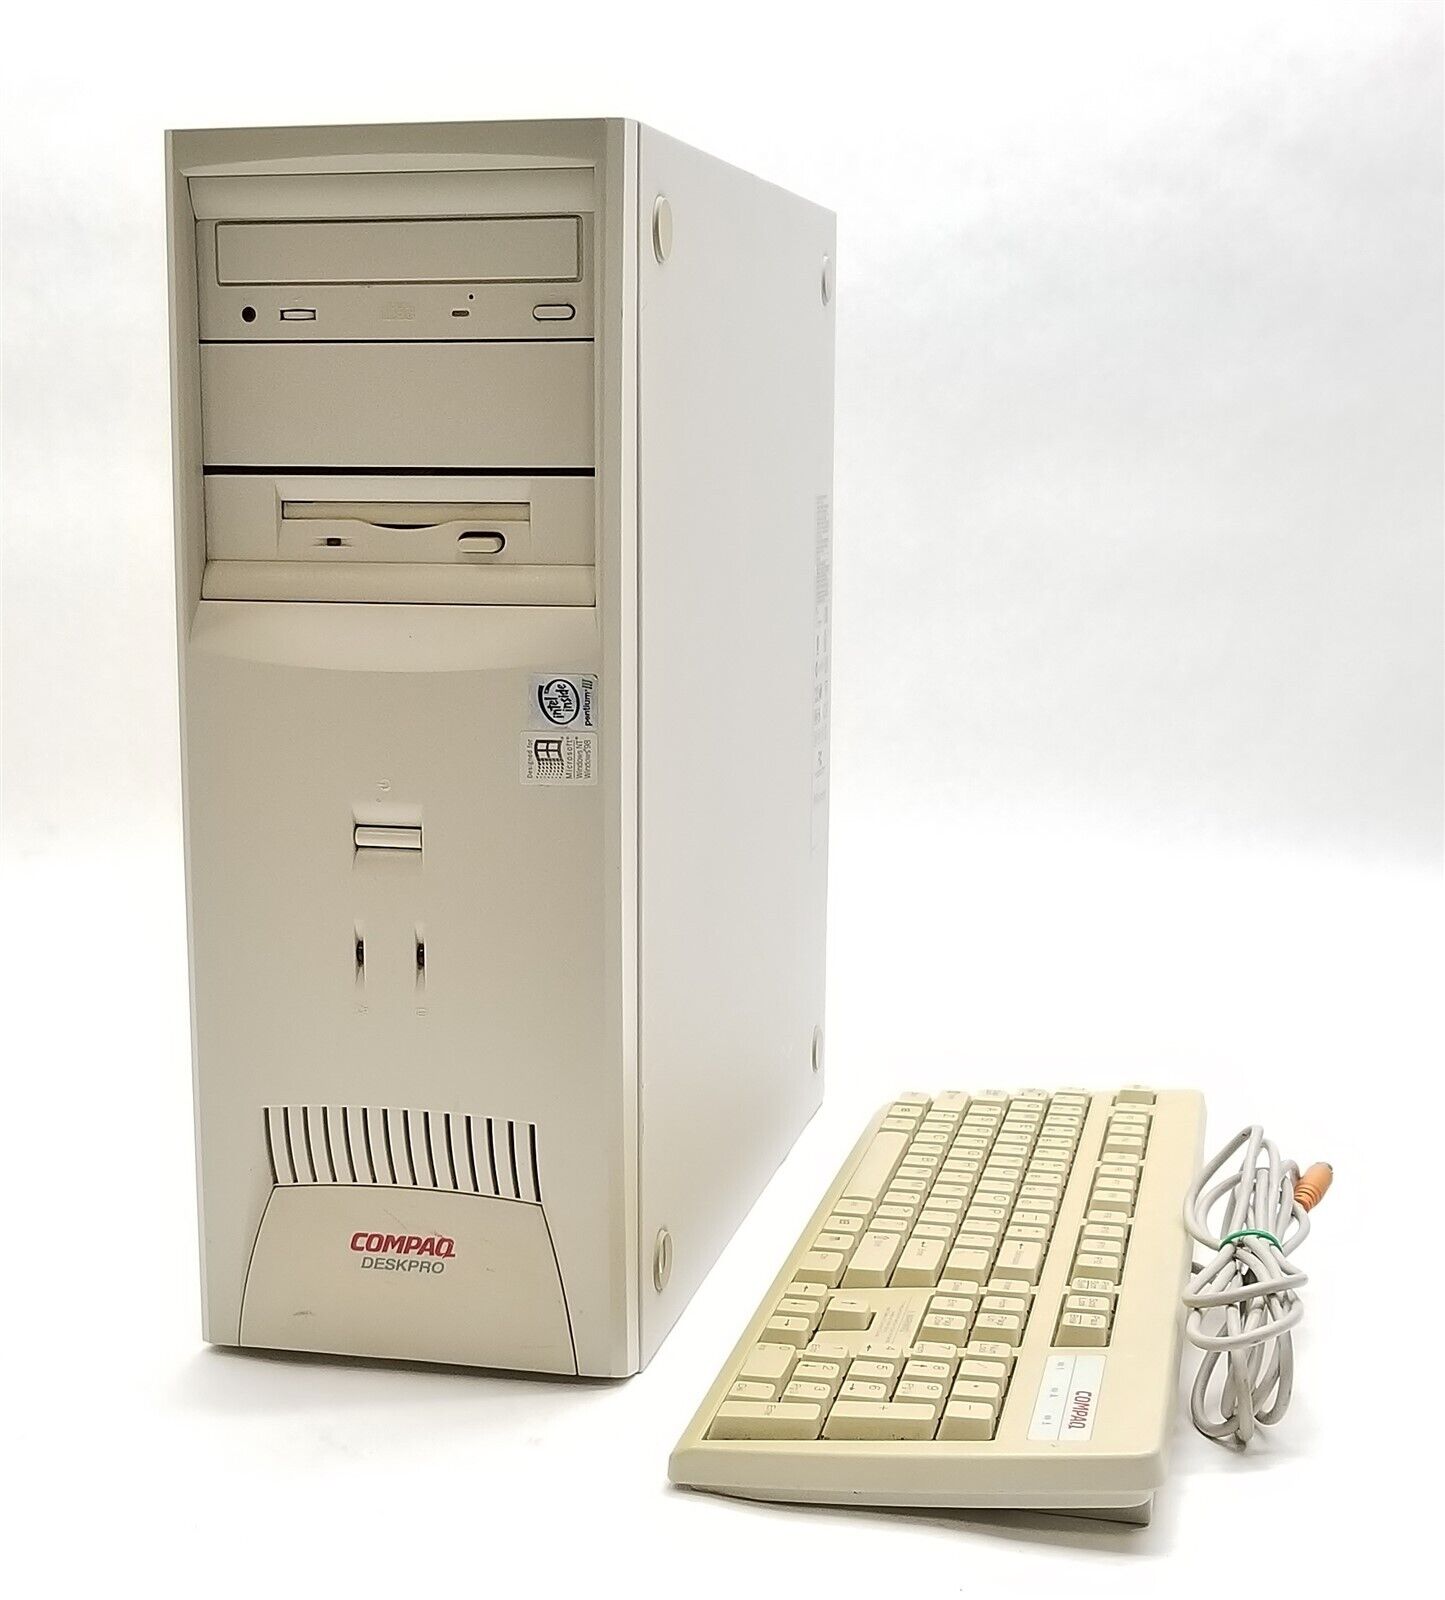 Retro Compaq Deskpro PD1000 Pentium III 550MHz 256MB NO/HD Vintage MATROX G200